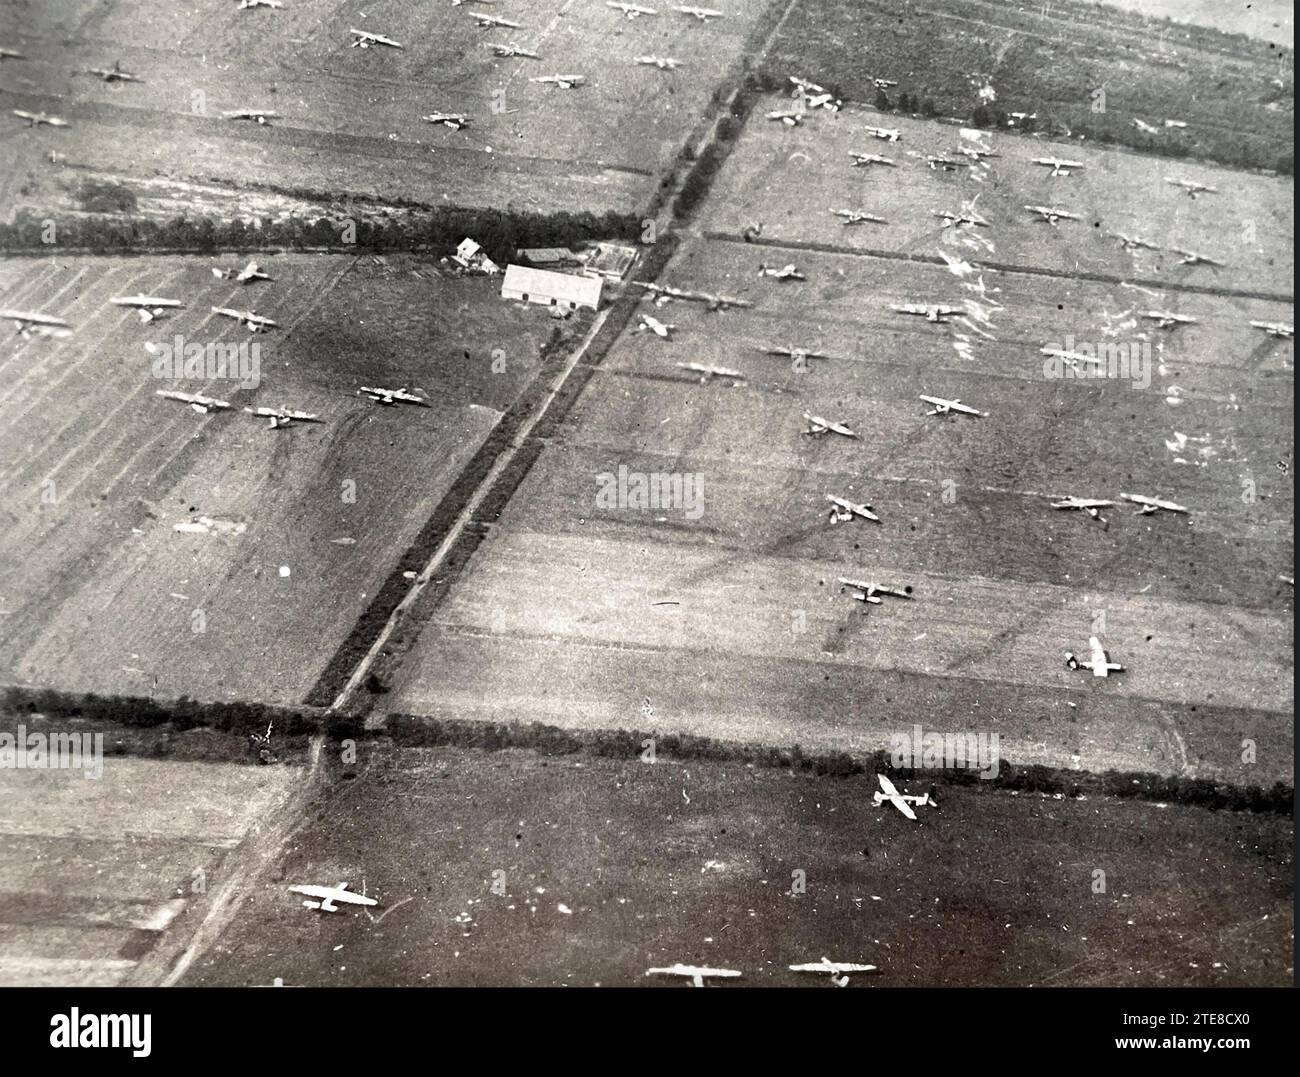 OPERATION MARKET GARDEN 1944. Horsa Segelflugzeuge auf LZ (Landing Zone) S nordwestlich von Arnheim, 17/18. September. Stockfoto